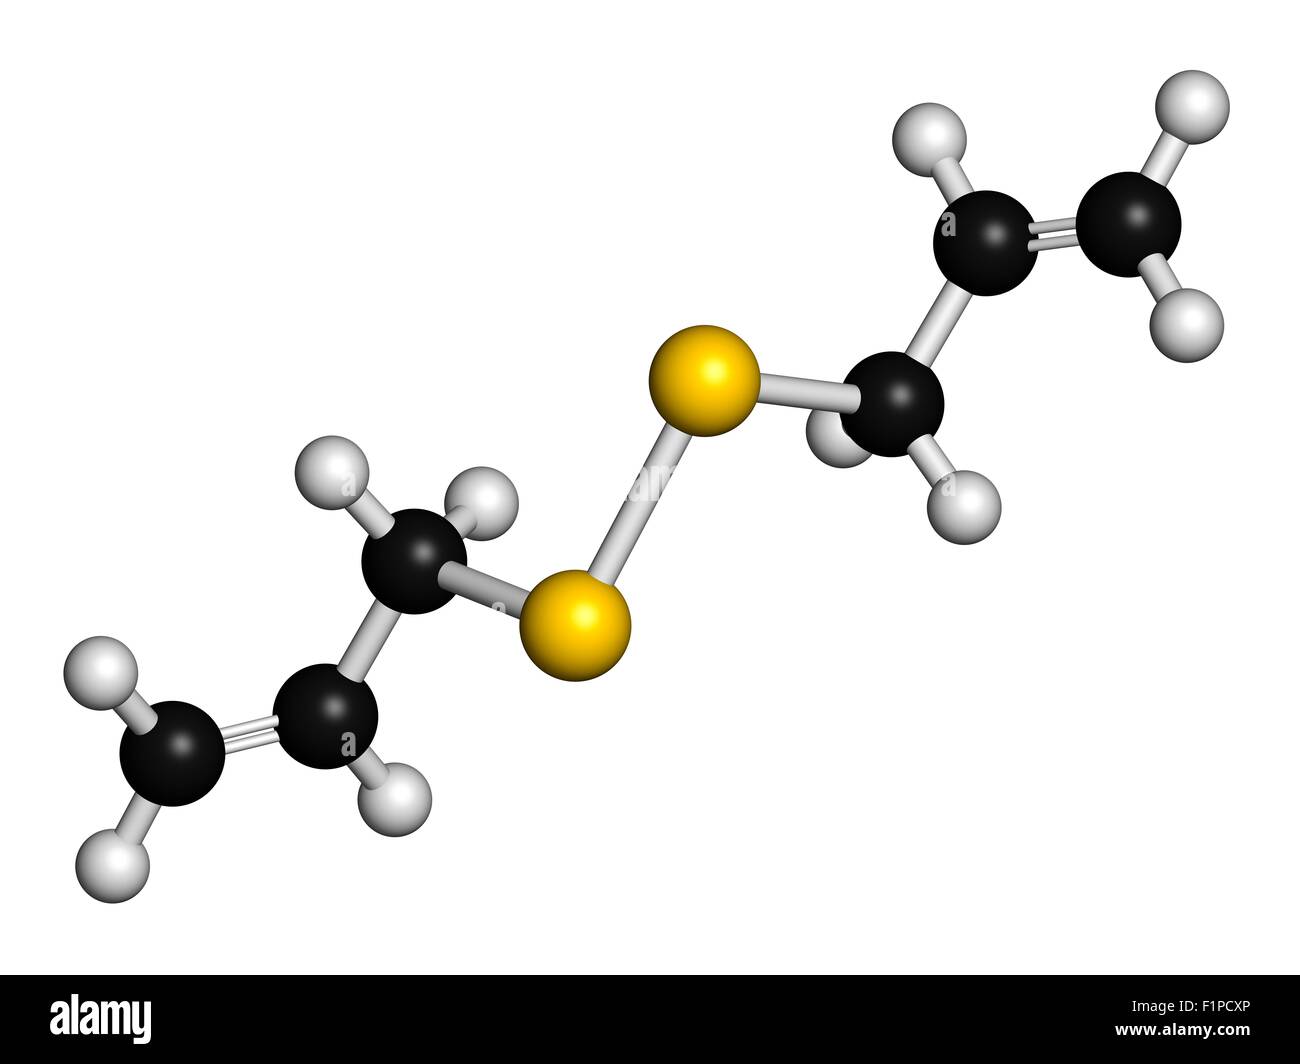 Diallyl Disulfid Knoblauch Molekül eine der Verbindungen verantwortlich für Geschmack, Geruch und Gesundheit Effekte des Knoblauchs sind Atome Stockfoto